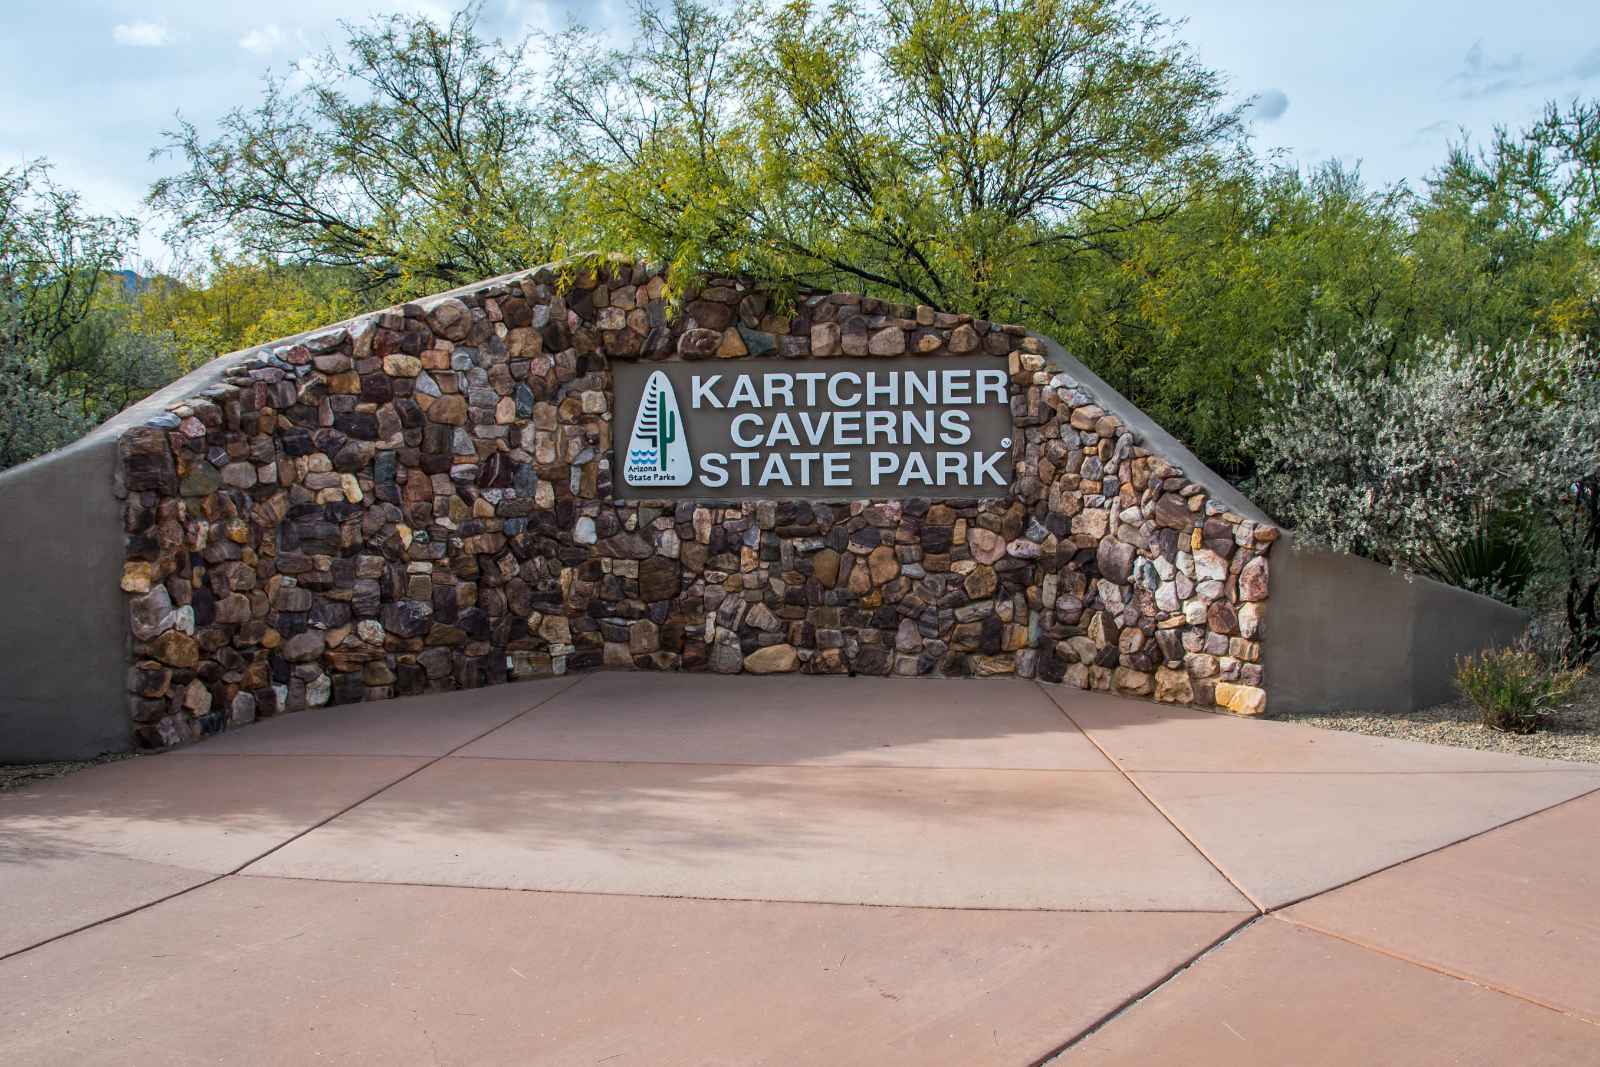 Best Arizona State Parks Kartchner Caverns State Park